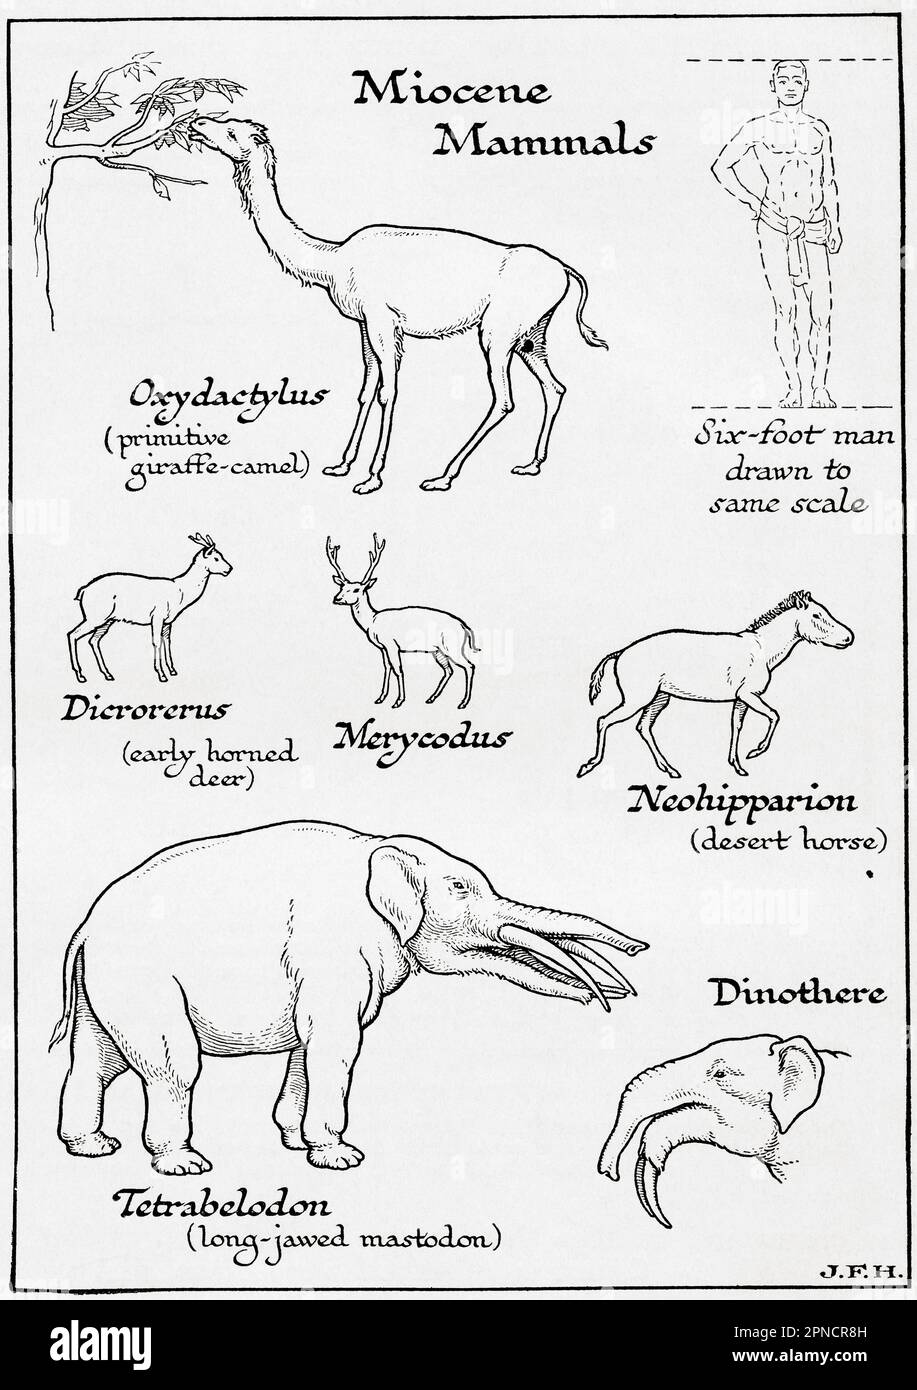 Diagrama de mamíferos del Mioceno incluyendo, Oxcydactylus, Dicrorerus, Merycodus, Neohipparion, Tetrabelodon y Dinothere. Se muestra en el diagrama un hombre de seis pies dibujado a la misma escala que otras figuras. Del libro Esquema de la Historia por H.G. Wells, publicado en 1920. Foto de stock